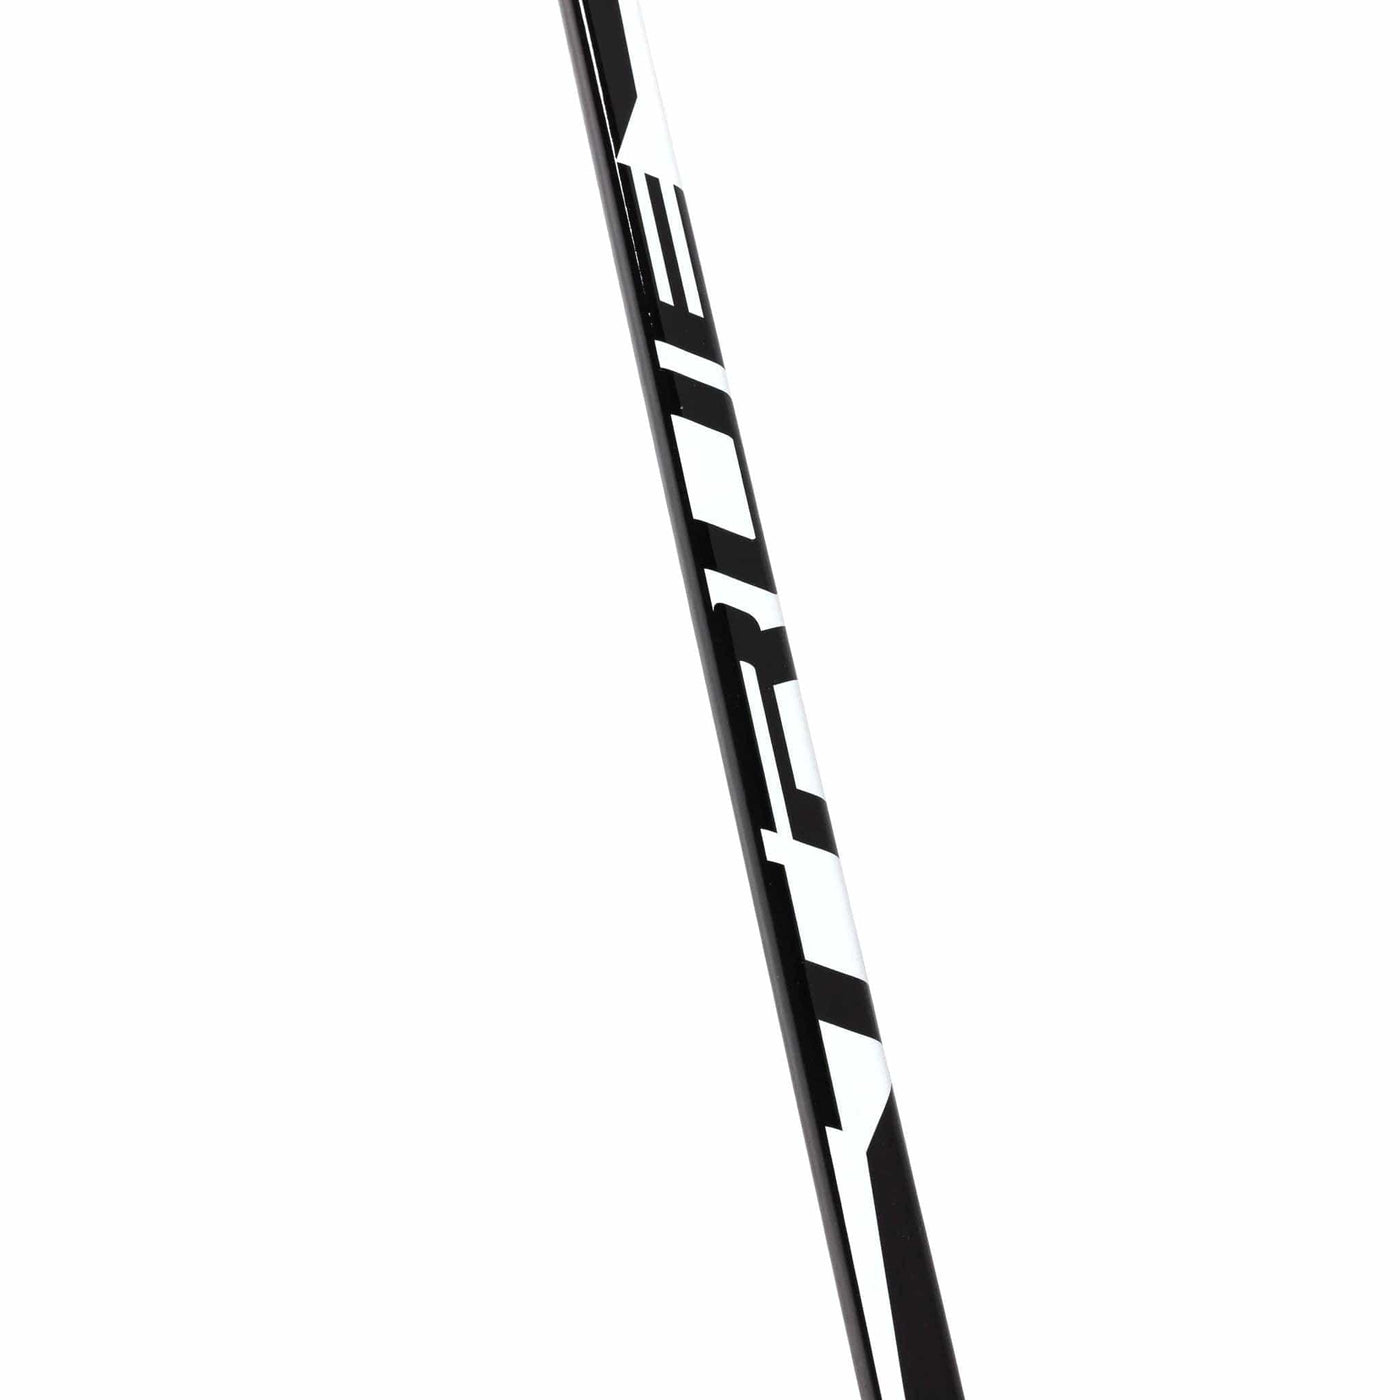 TRUE XC5 ACF Senior Hockey Stick